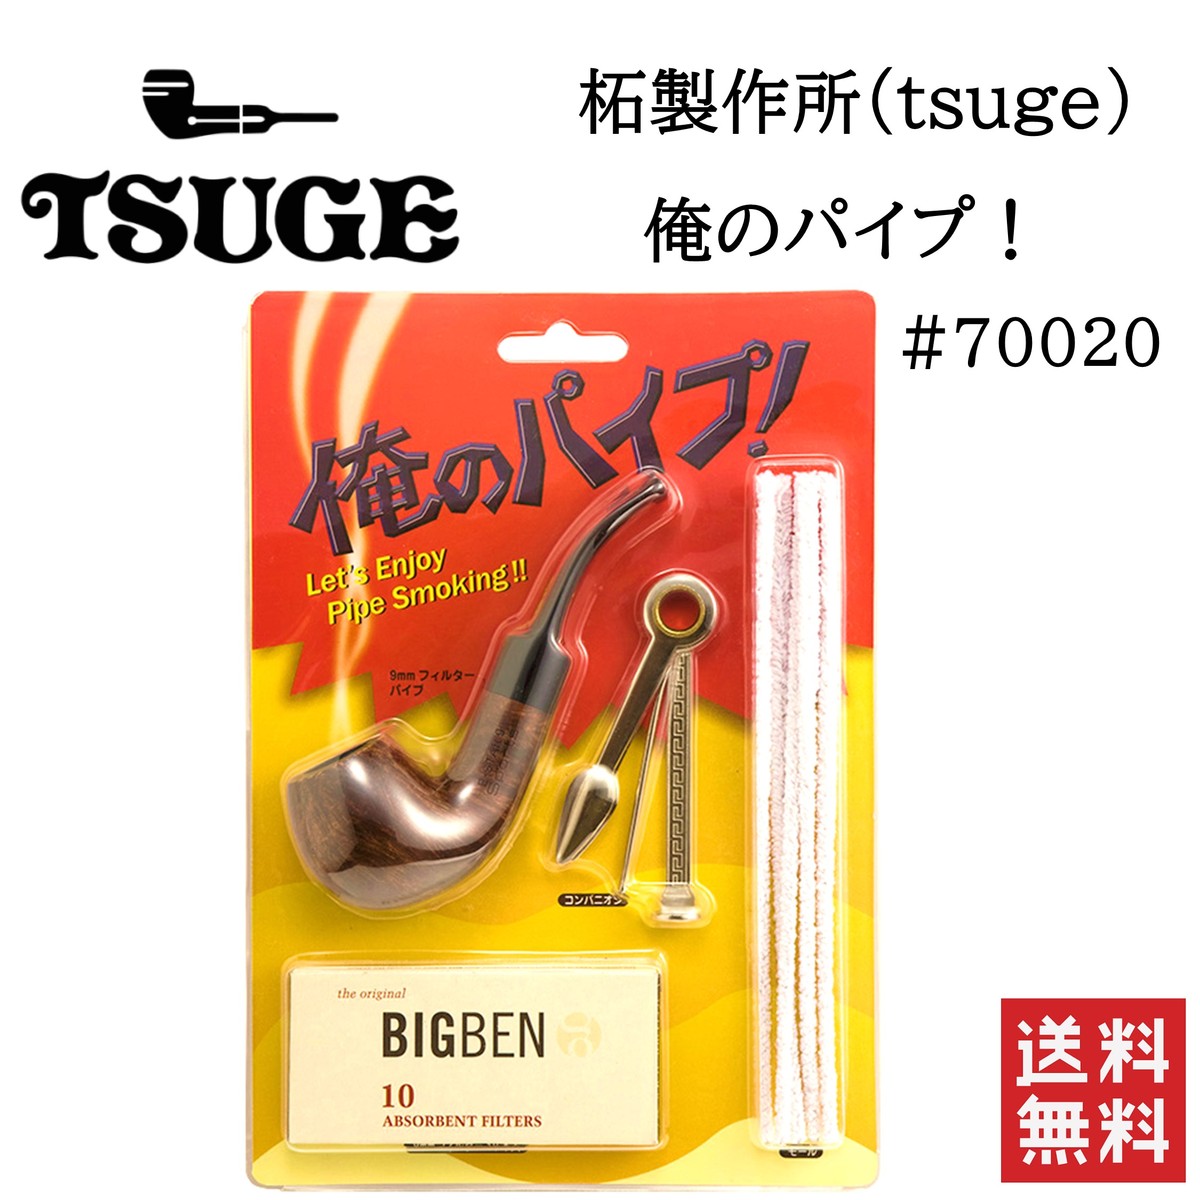 楽天市場 柘製作所 Tsuge 俺のパイプ 700 喫煙具 パイプ 煙管 キセル Stark 楽天市場店